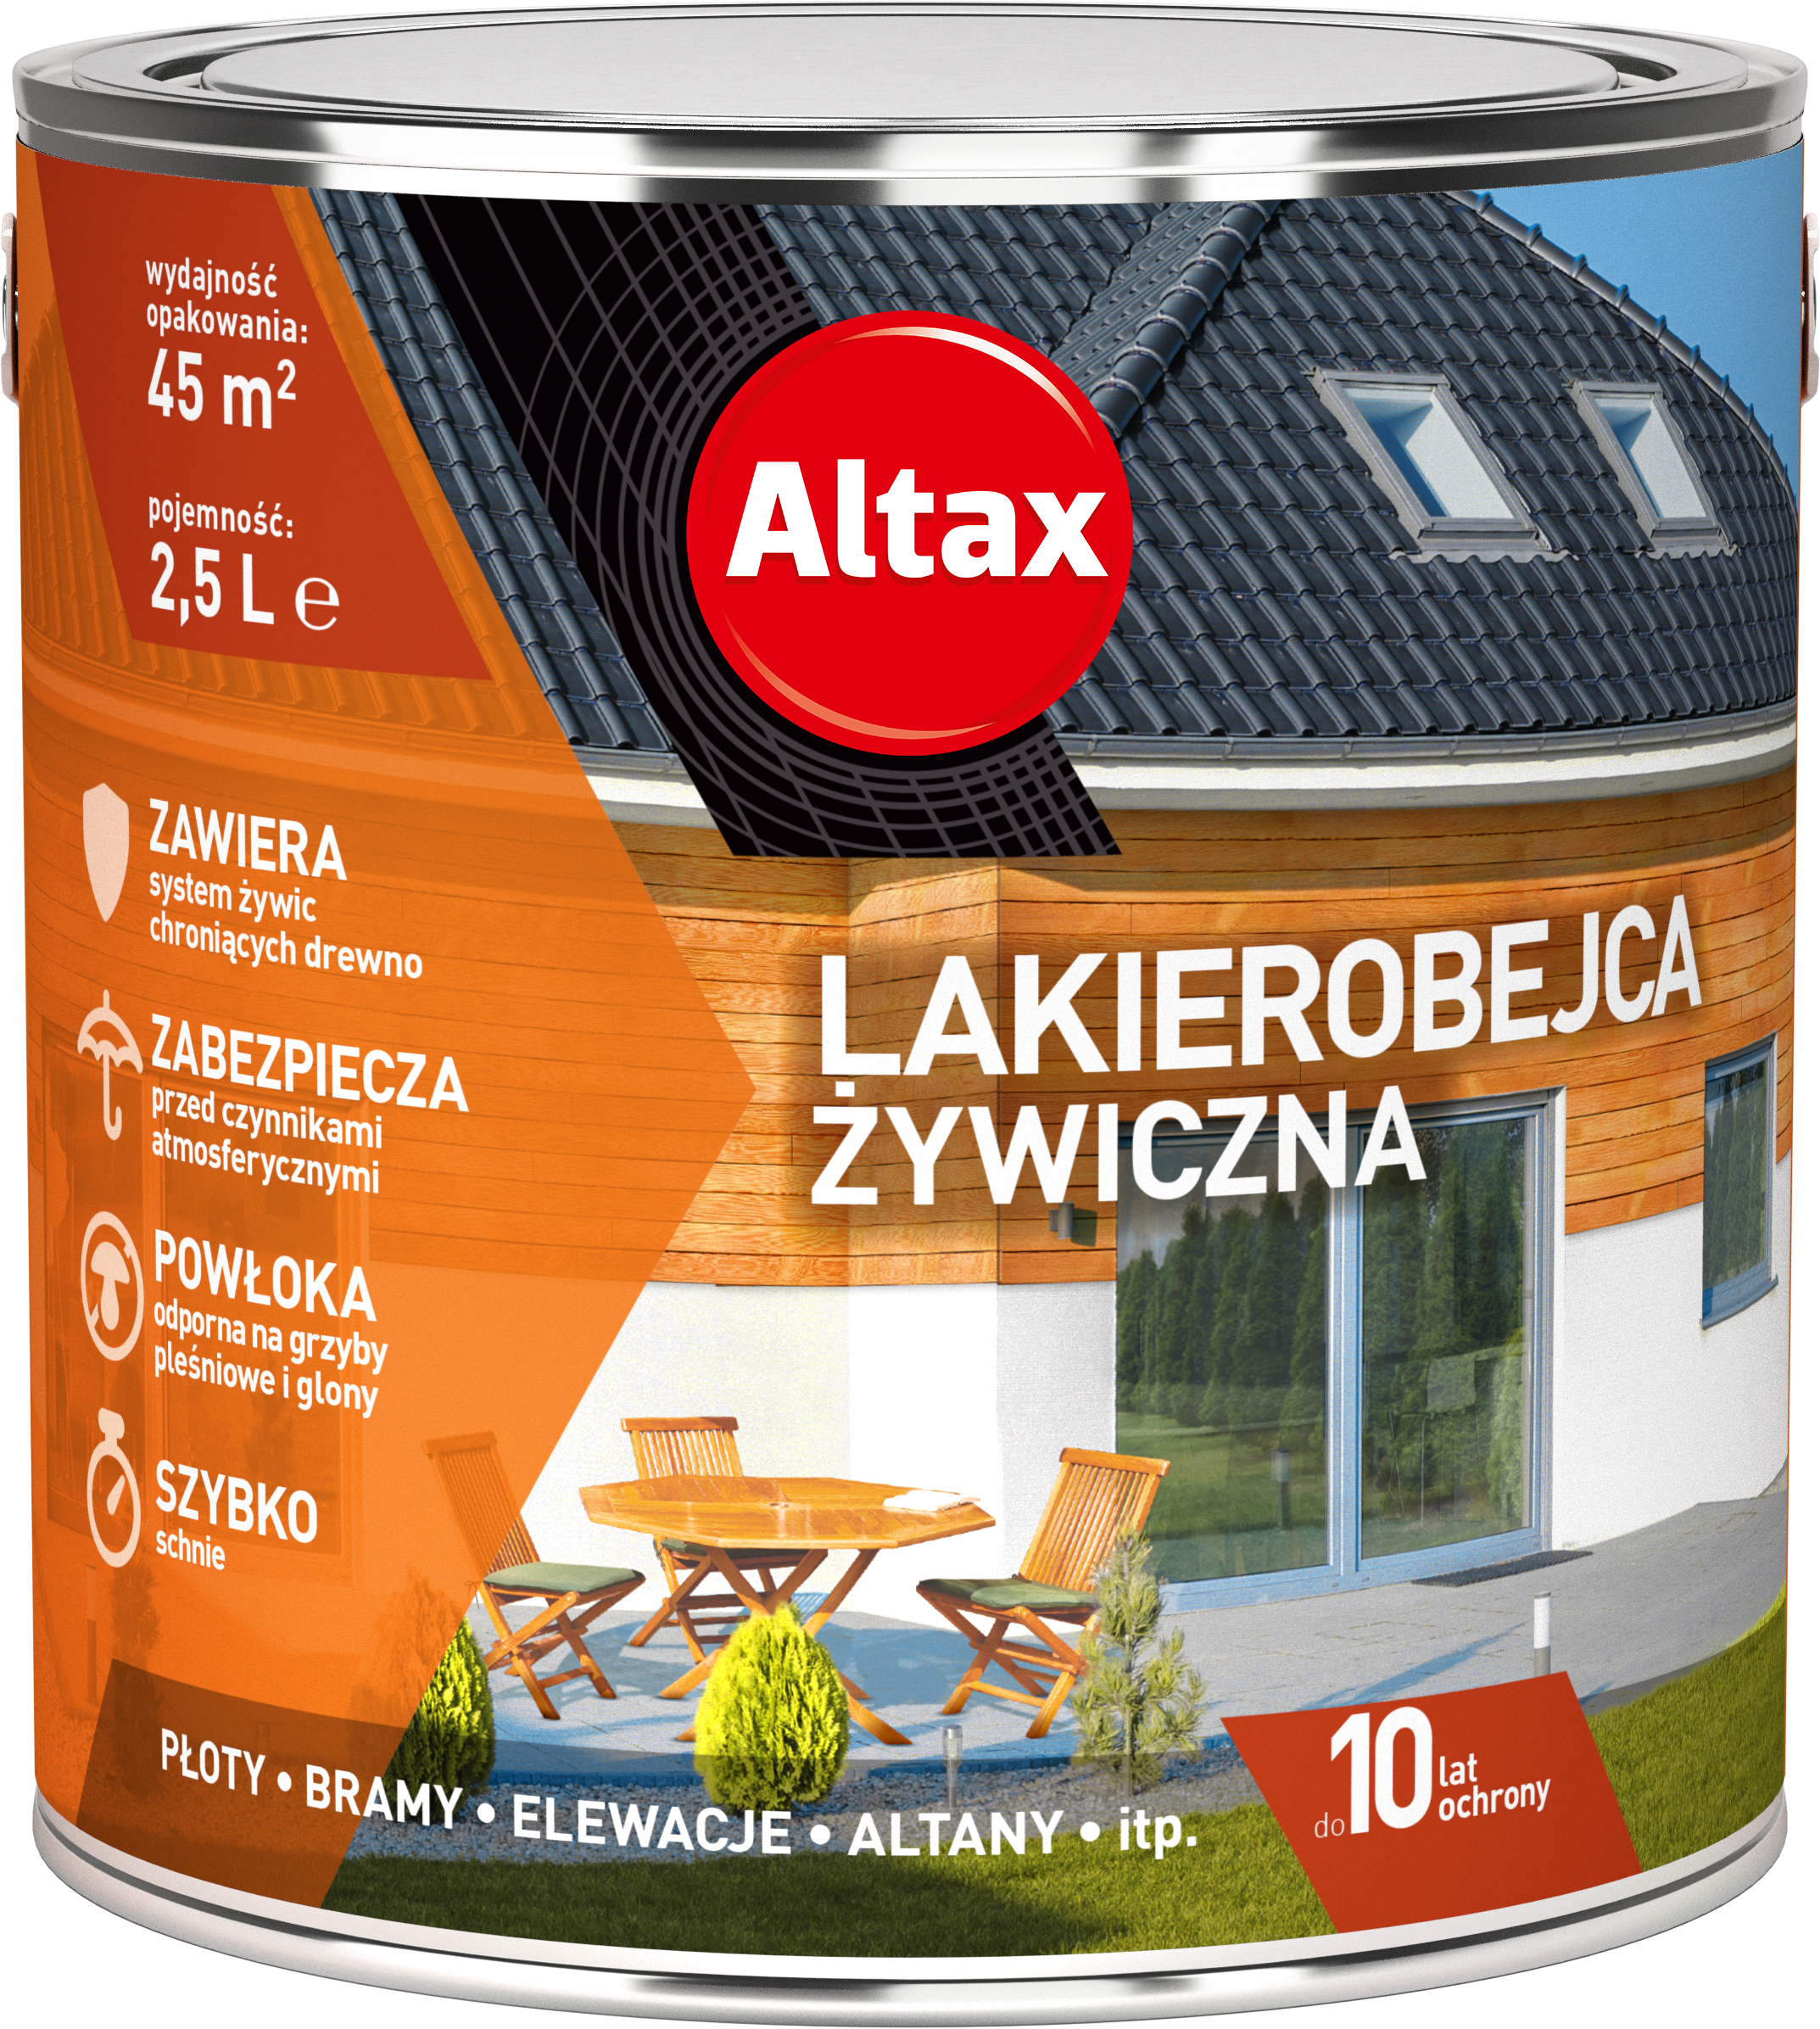 ALTAX-lakierobejca-zywiczna-2,5L-01